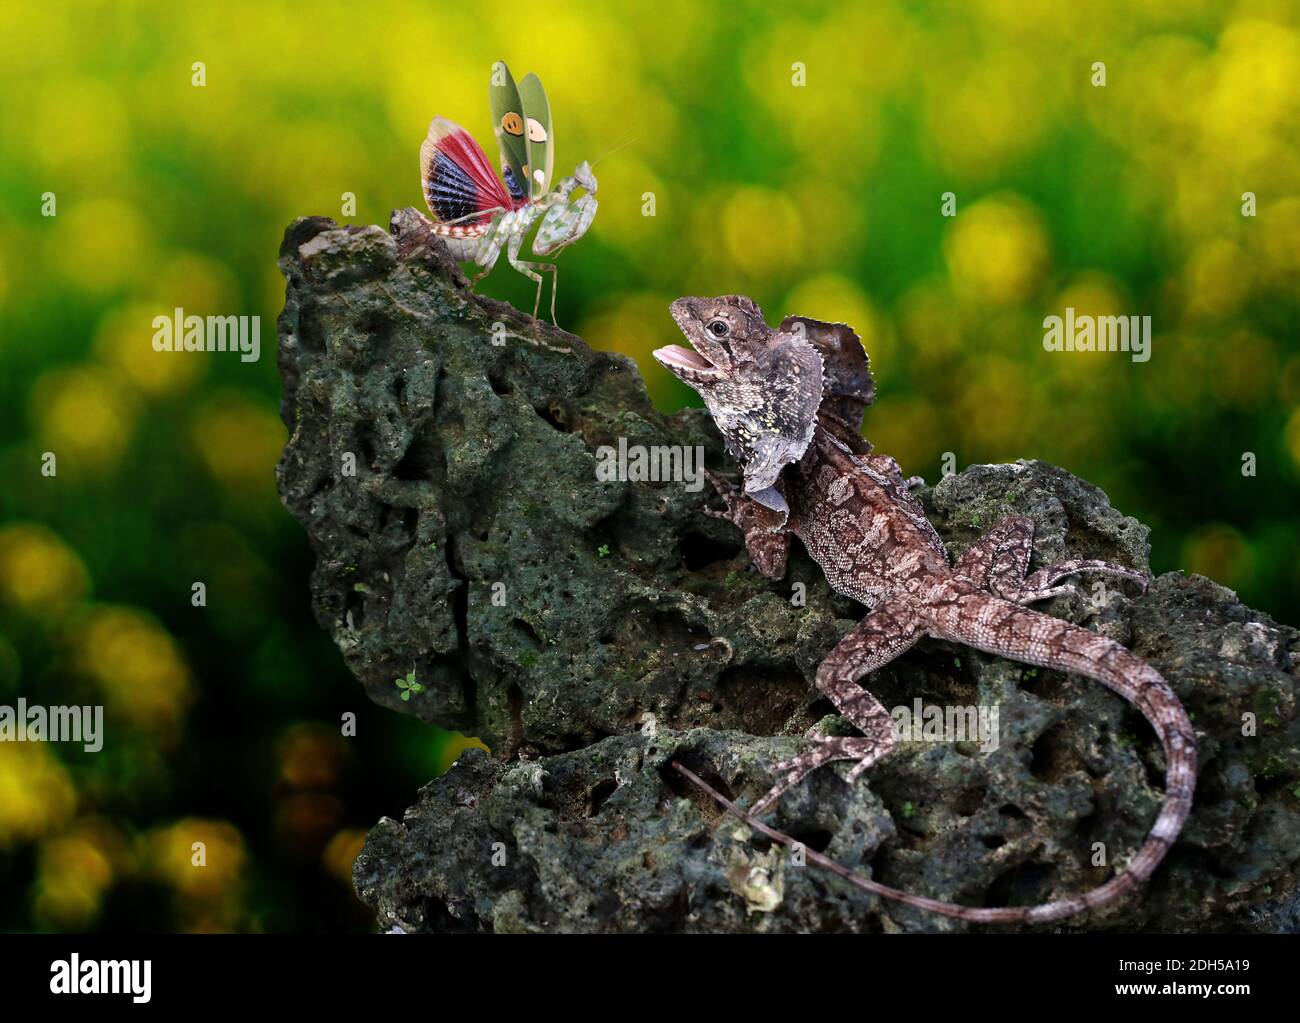 SOA payung (Chlamydosaurus kingii) versucht, eine Gottesanbeterin zu fangen. Stockfoto